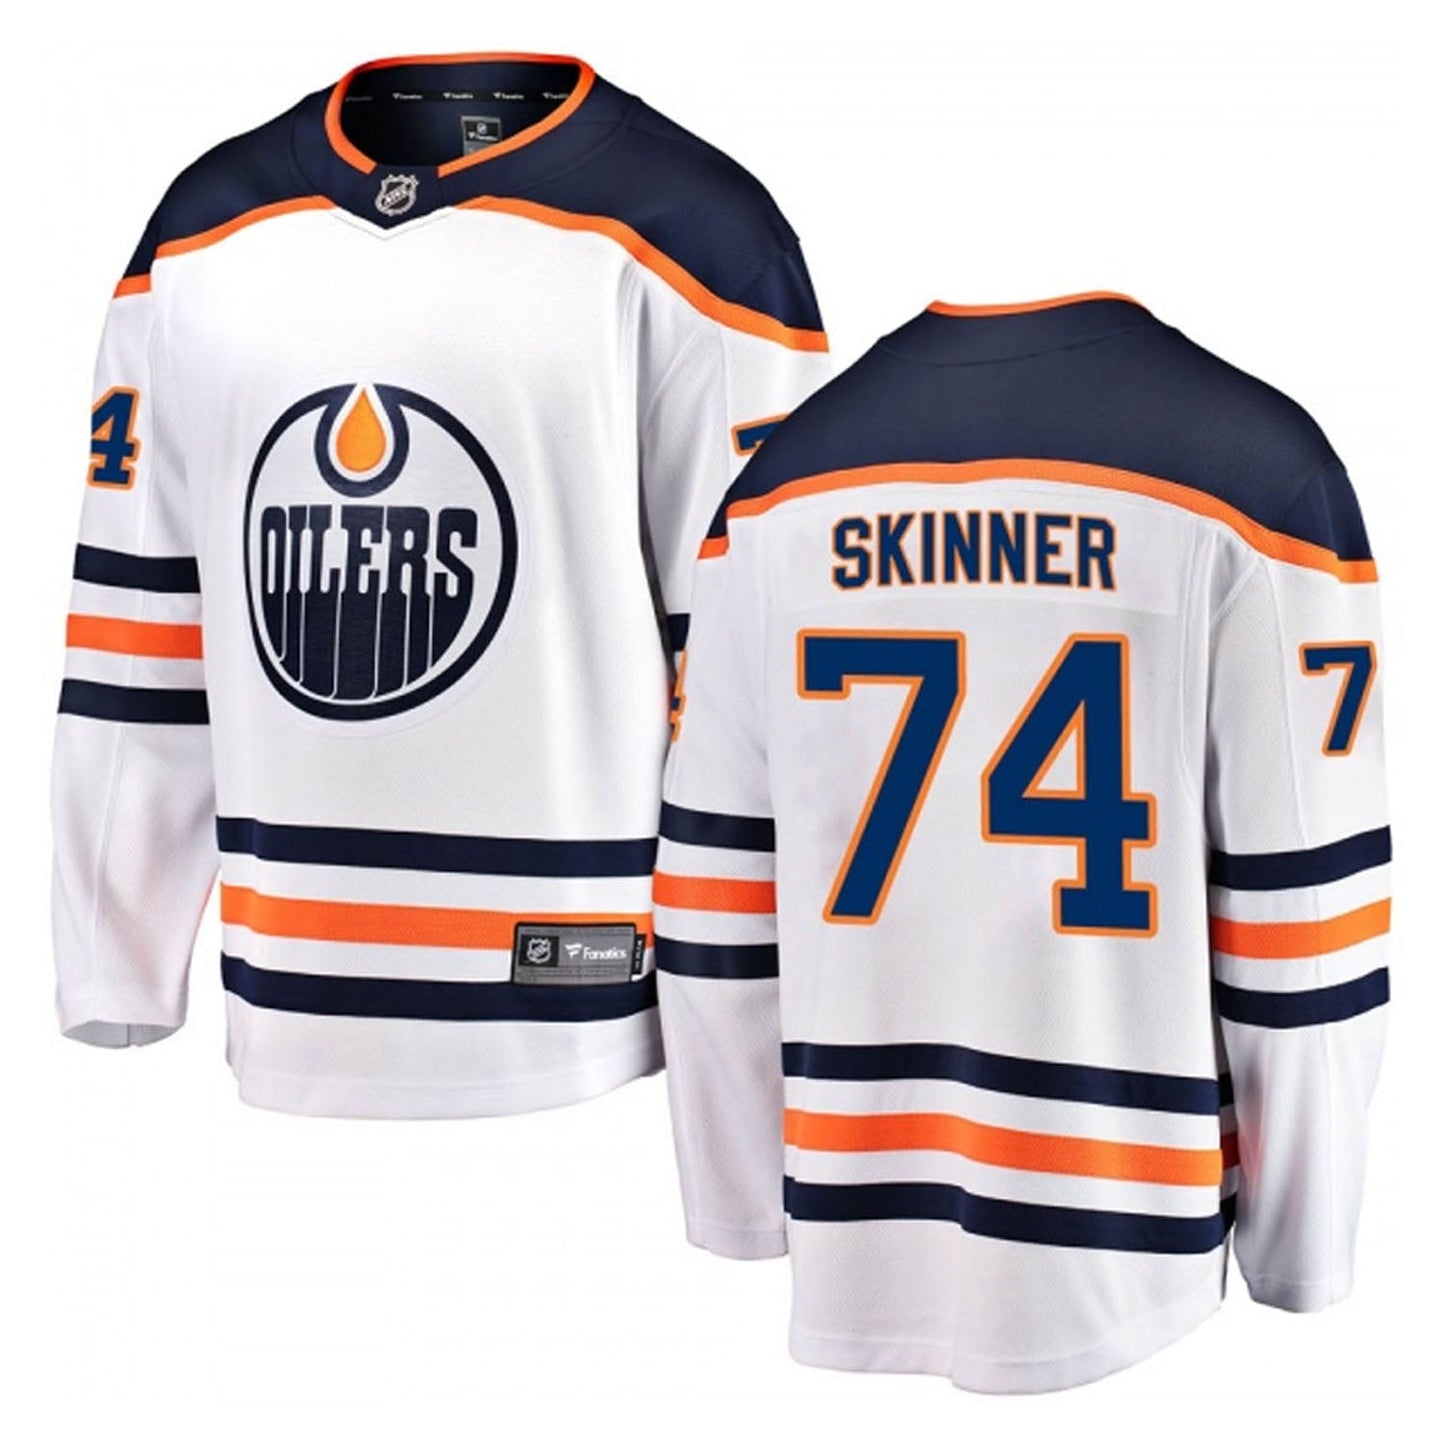 NHL Stuart Skinner Edmonton Oilers 74 Jersey